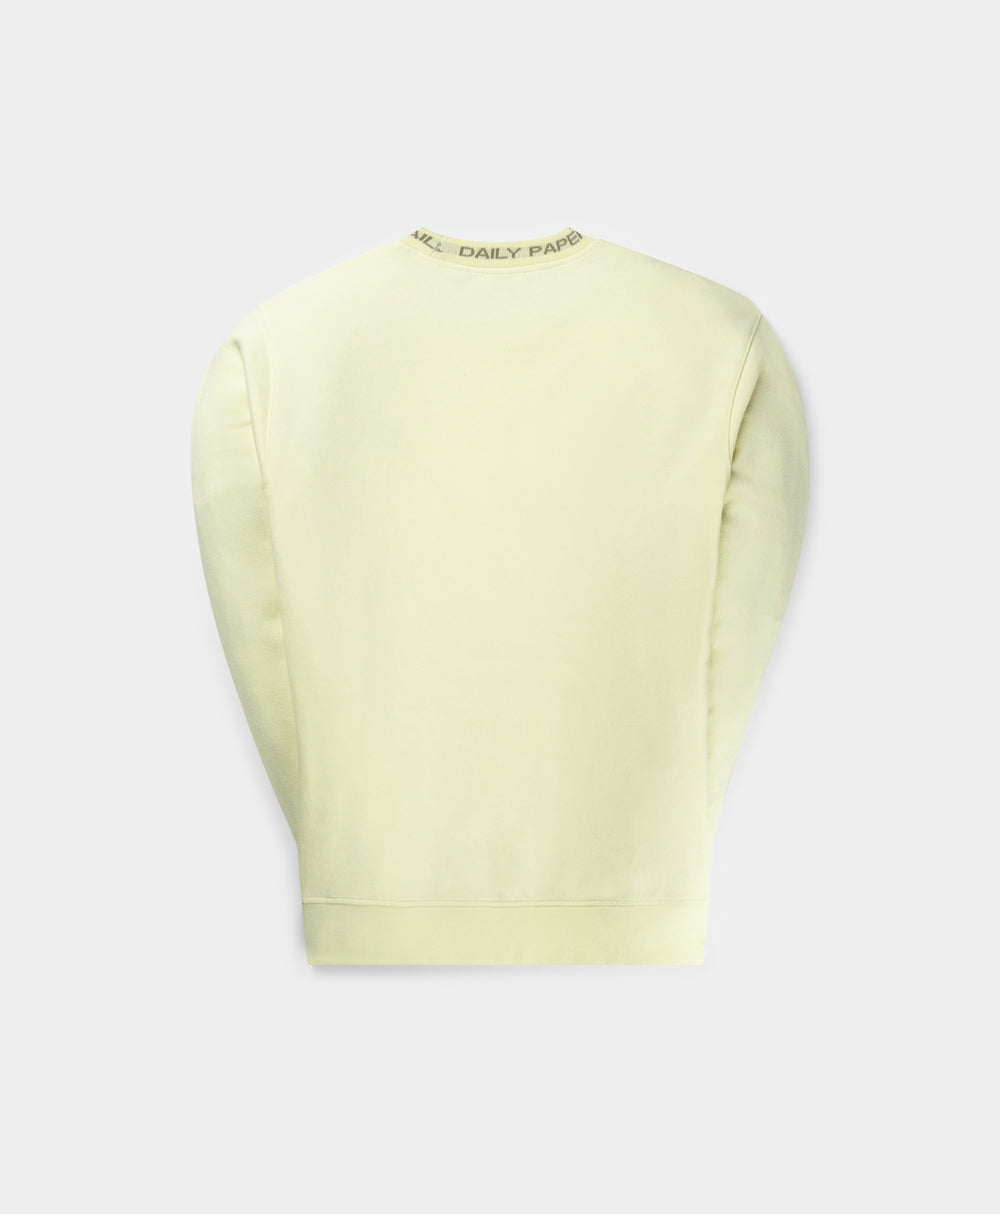 DP - Icing Yellow Erib Sweater - Packshot - Rear